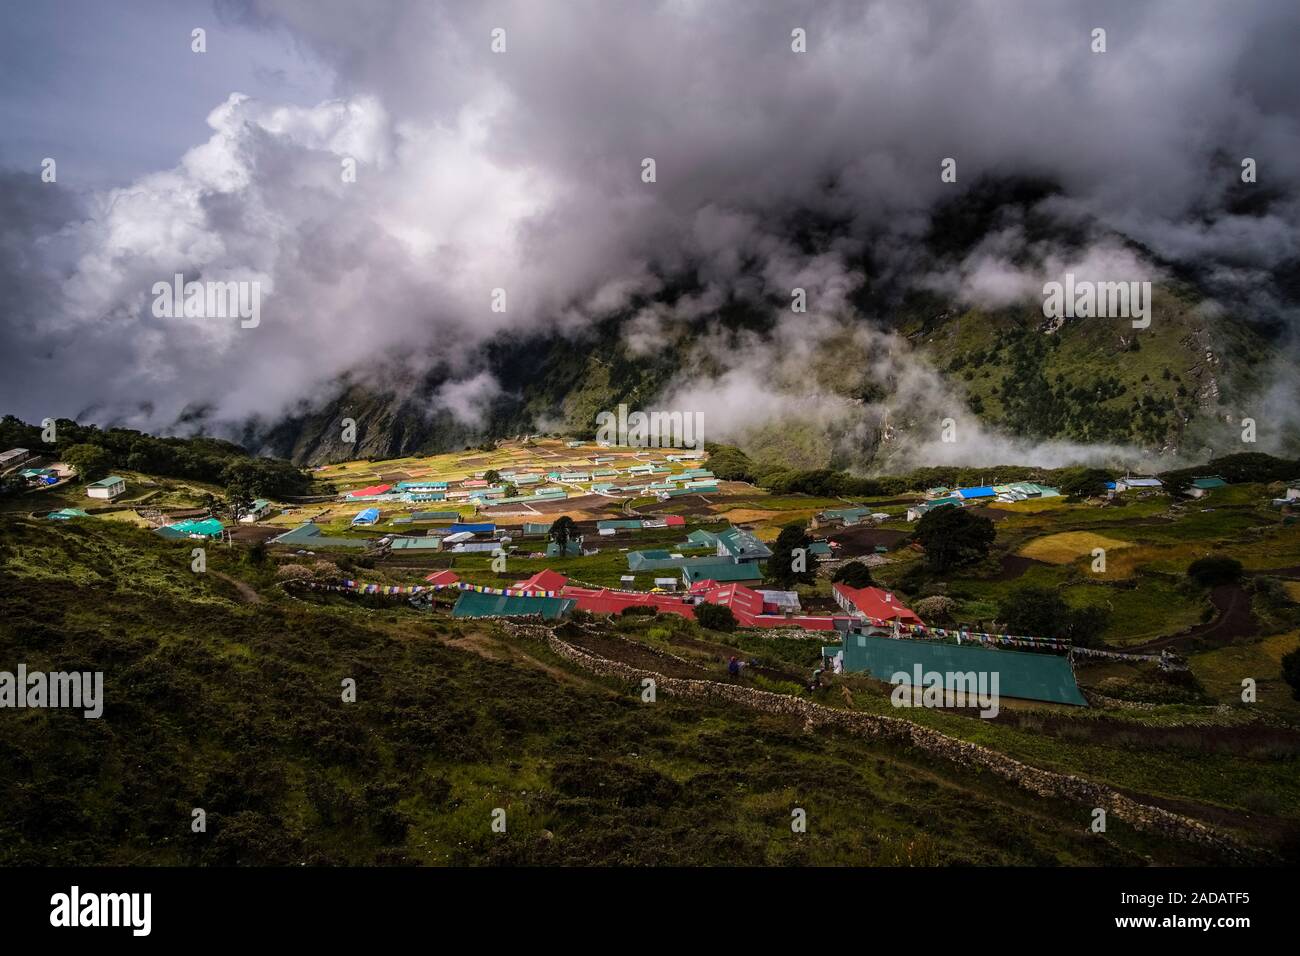 Vista aerea sul villaggio e campi circostanti, monsone di nuvole che si muovono in Foto Stock